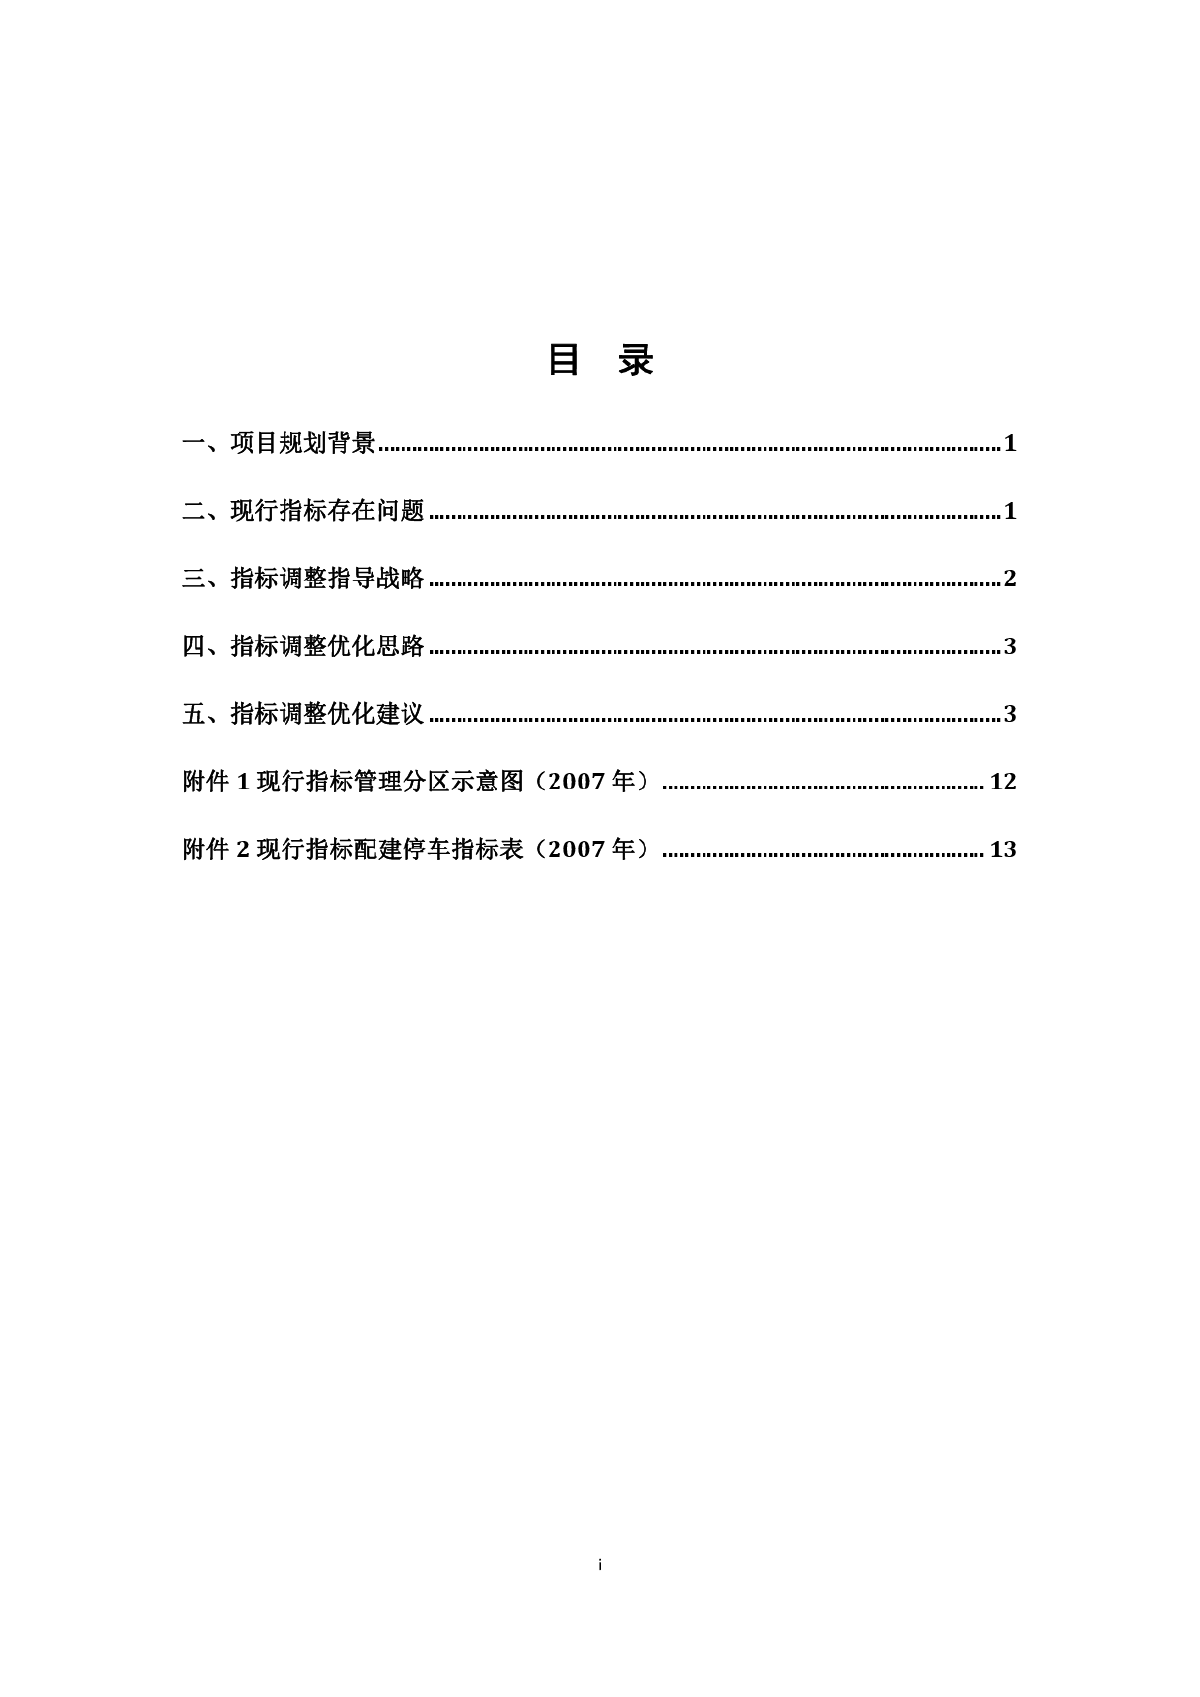 广州市停车配建指标优化研究（征求意见稿）.pdf-图二